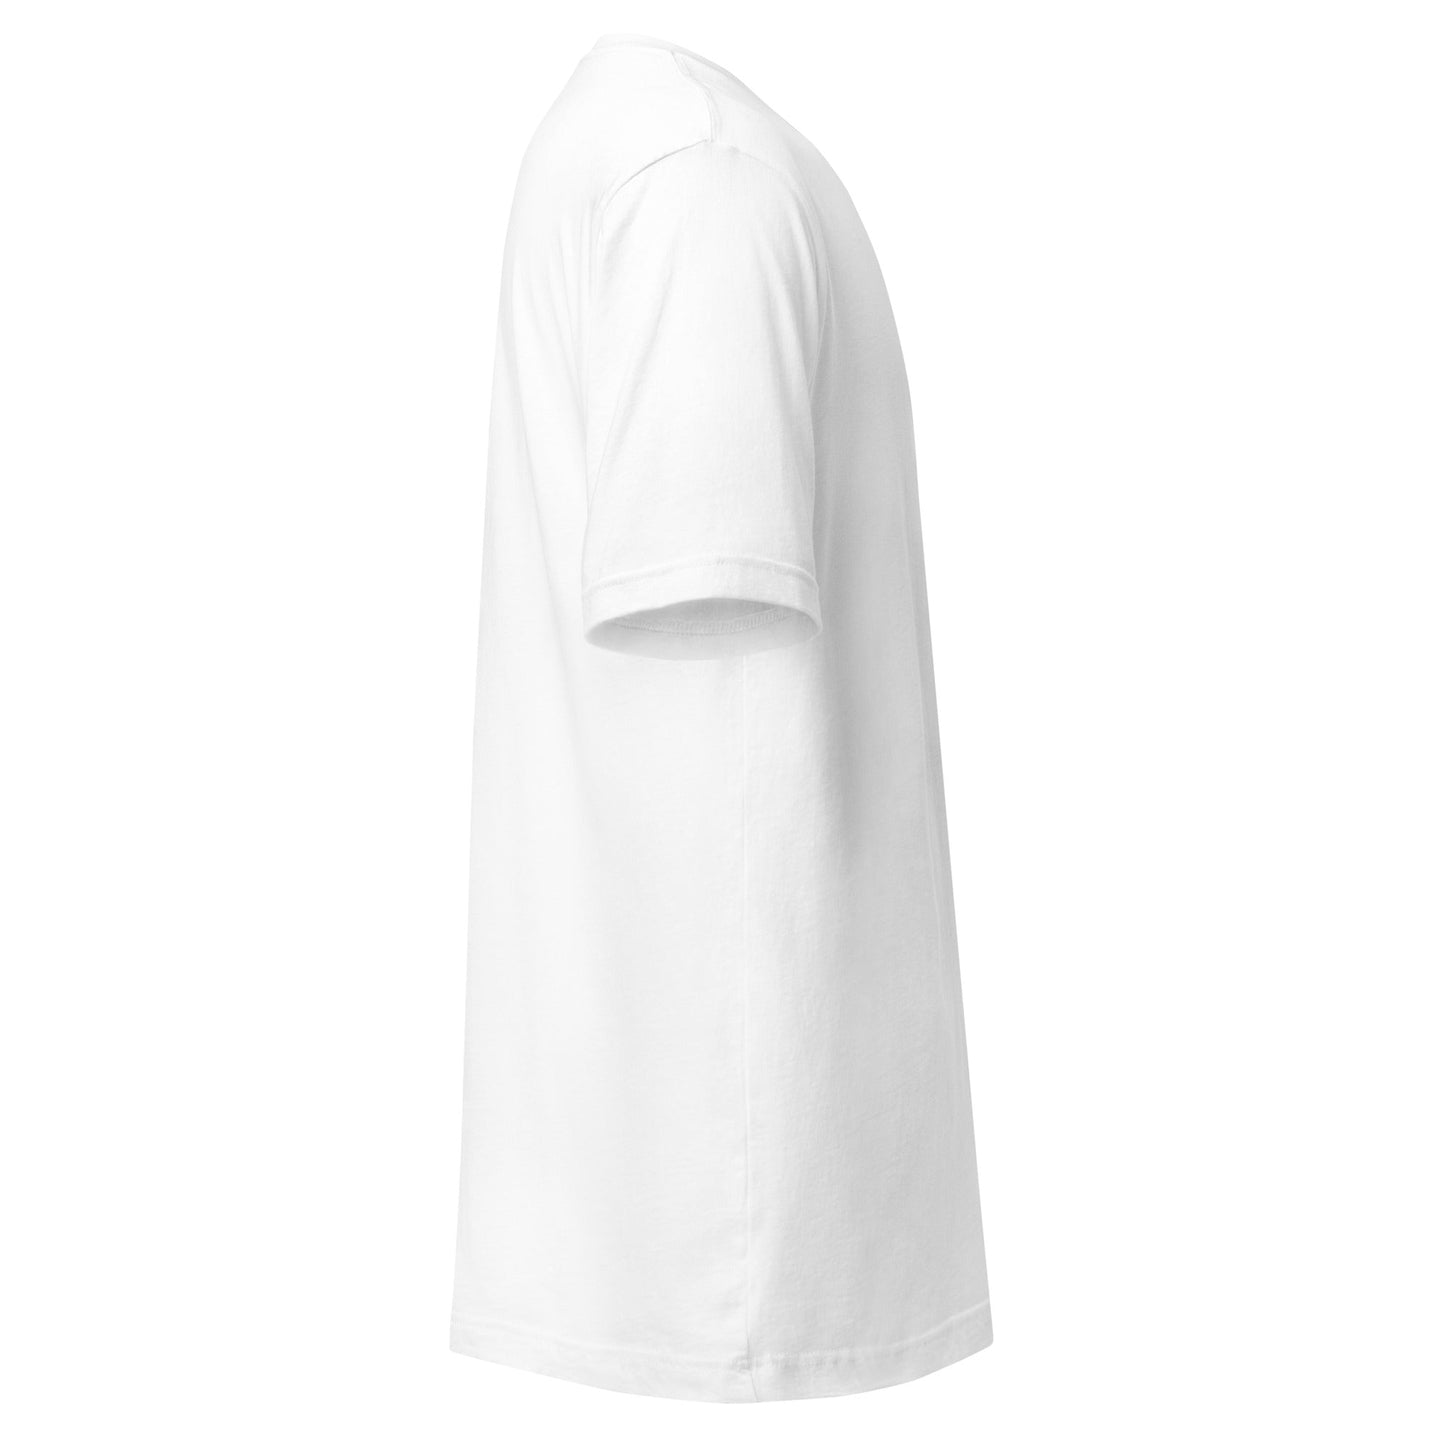 Camiseta Blanca de Algodón Pack 3 - Elegancia y calidad en nuestra insignia. Descubre la perfección del algodón premium importado. Paquete de 3